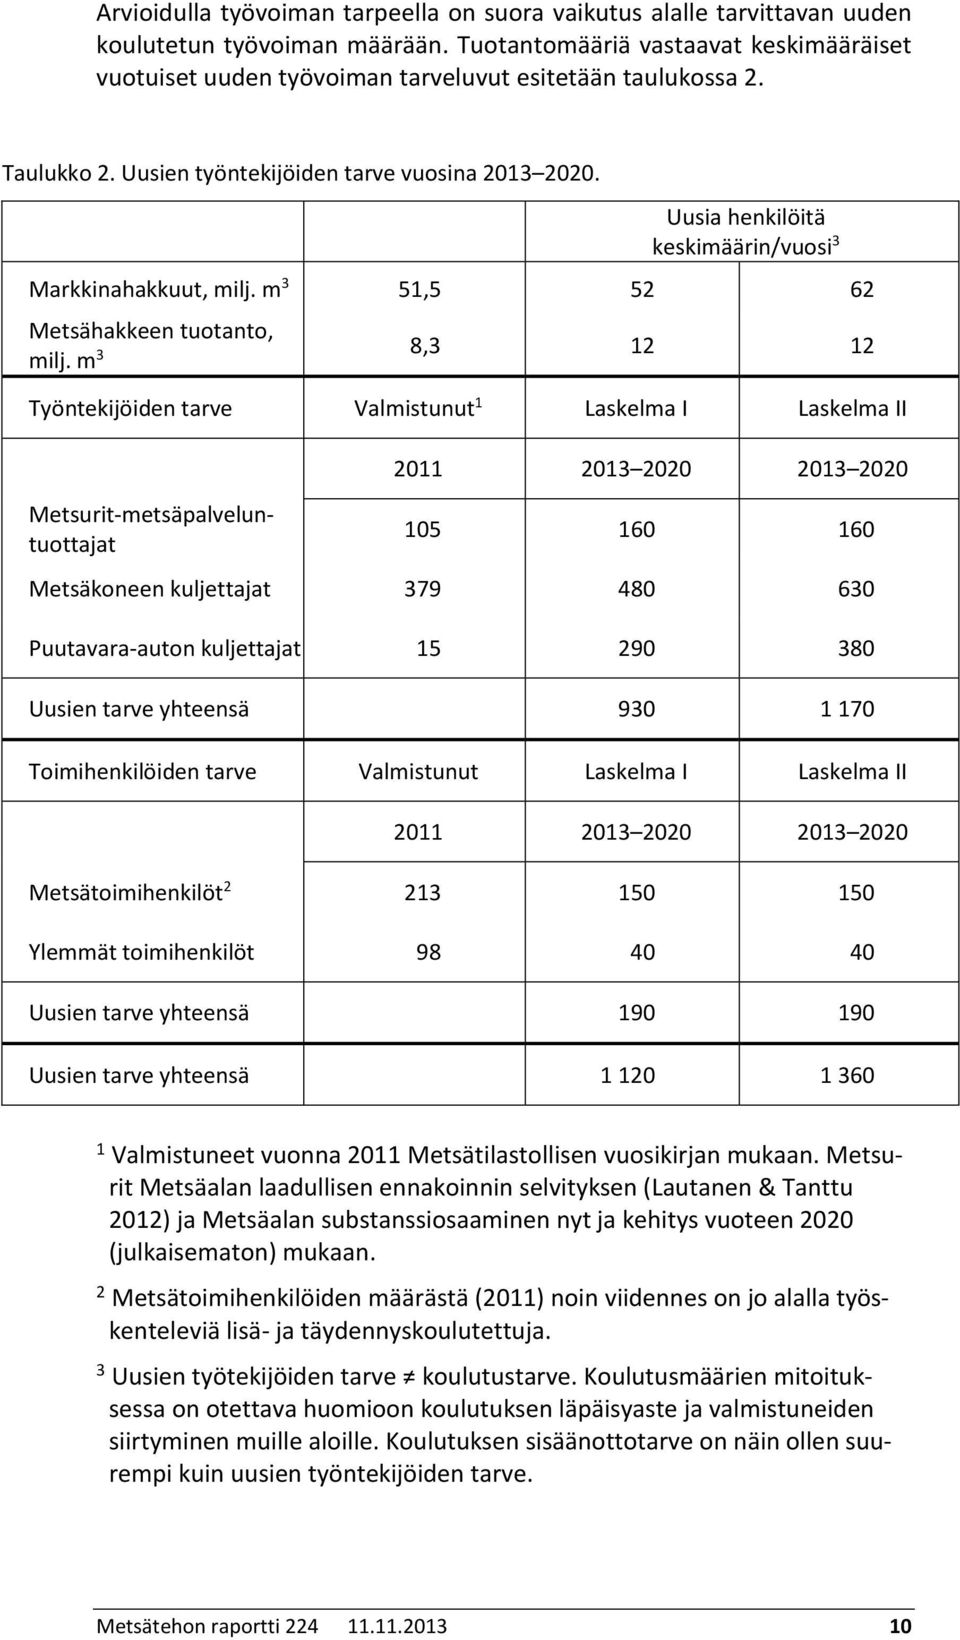 Uusia henkilöitä keskimäärin/vuosi 3 Markkinahakkuut, milj. m 3 51,5 52 62 Metsähakkeen tuotanto, milj.